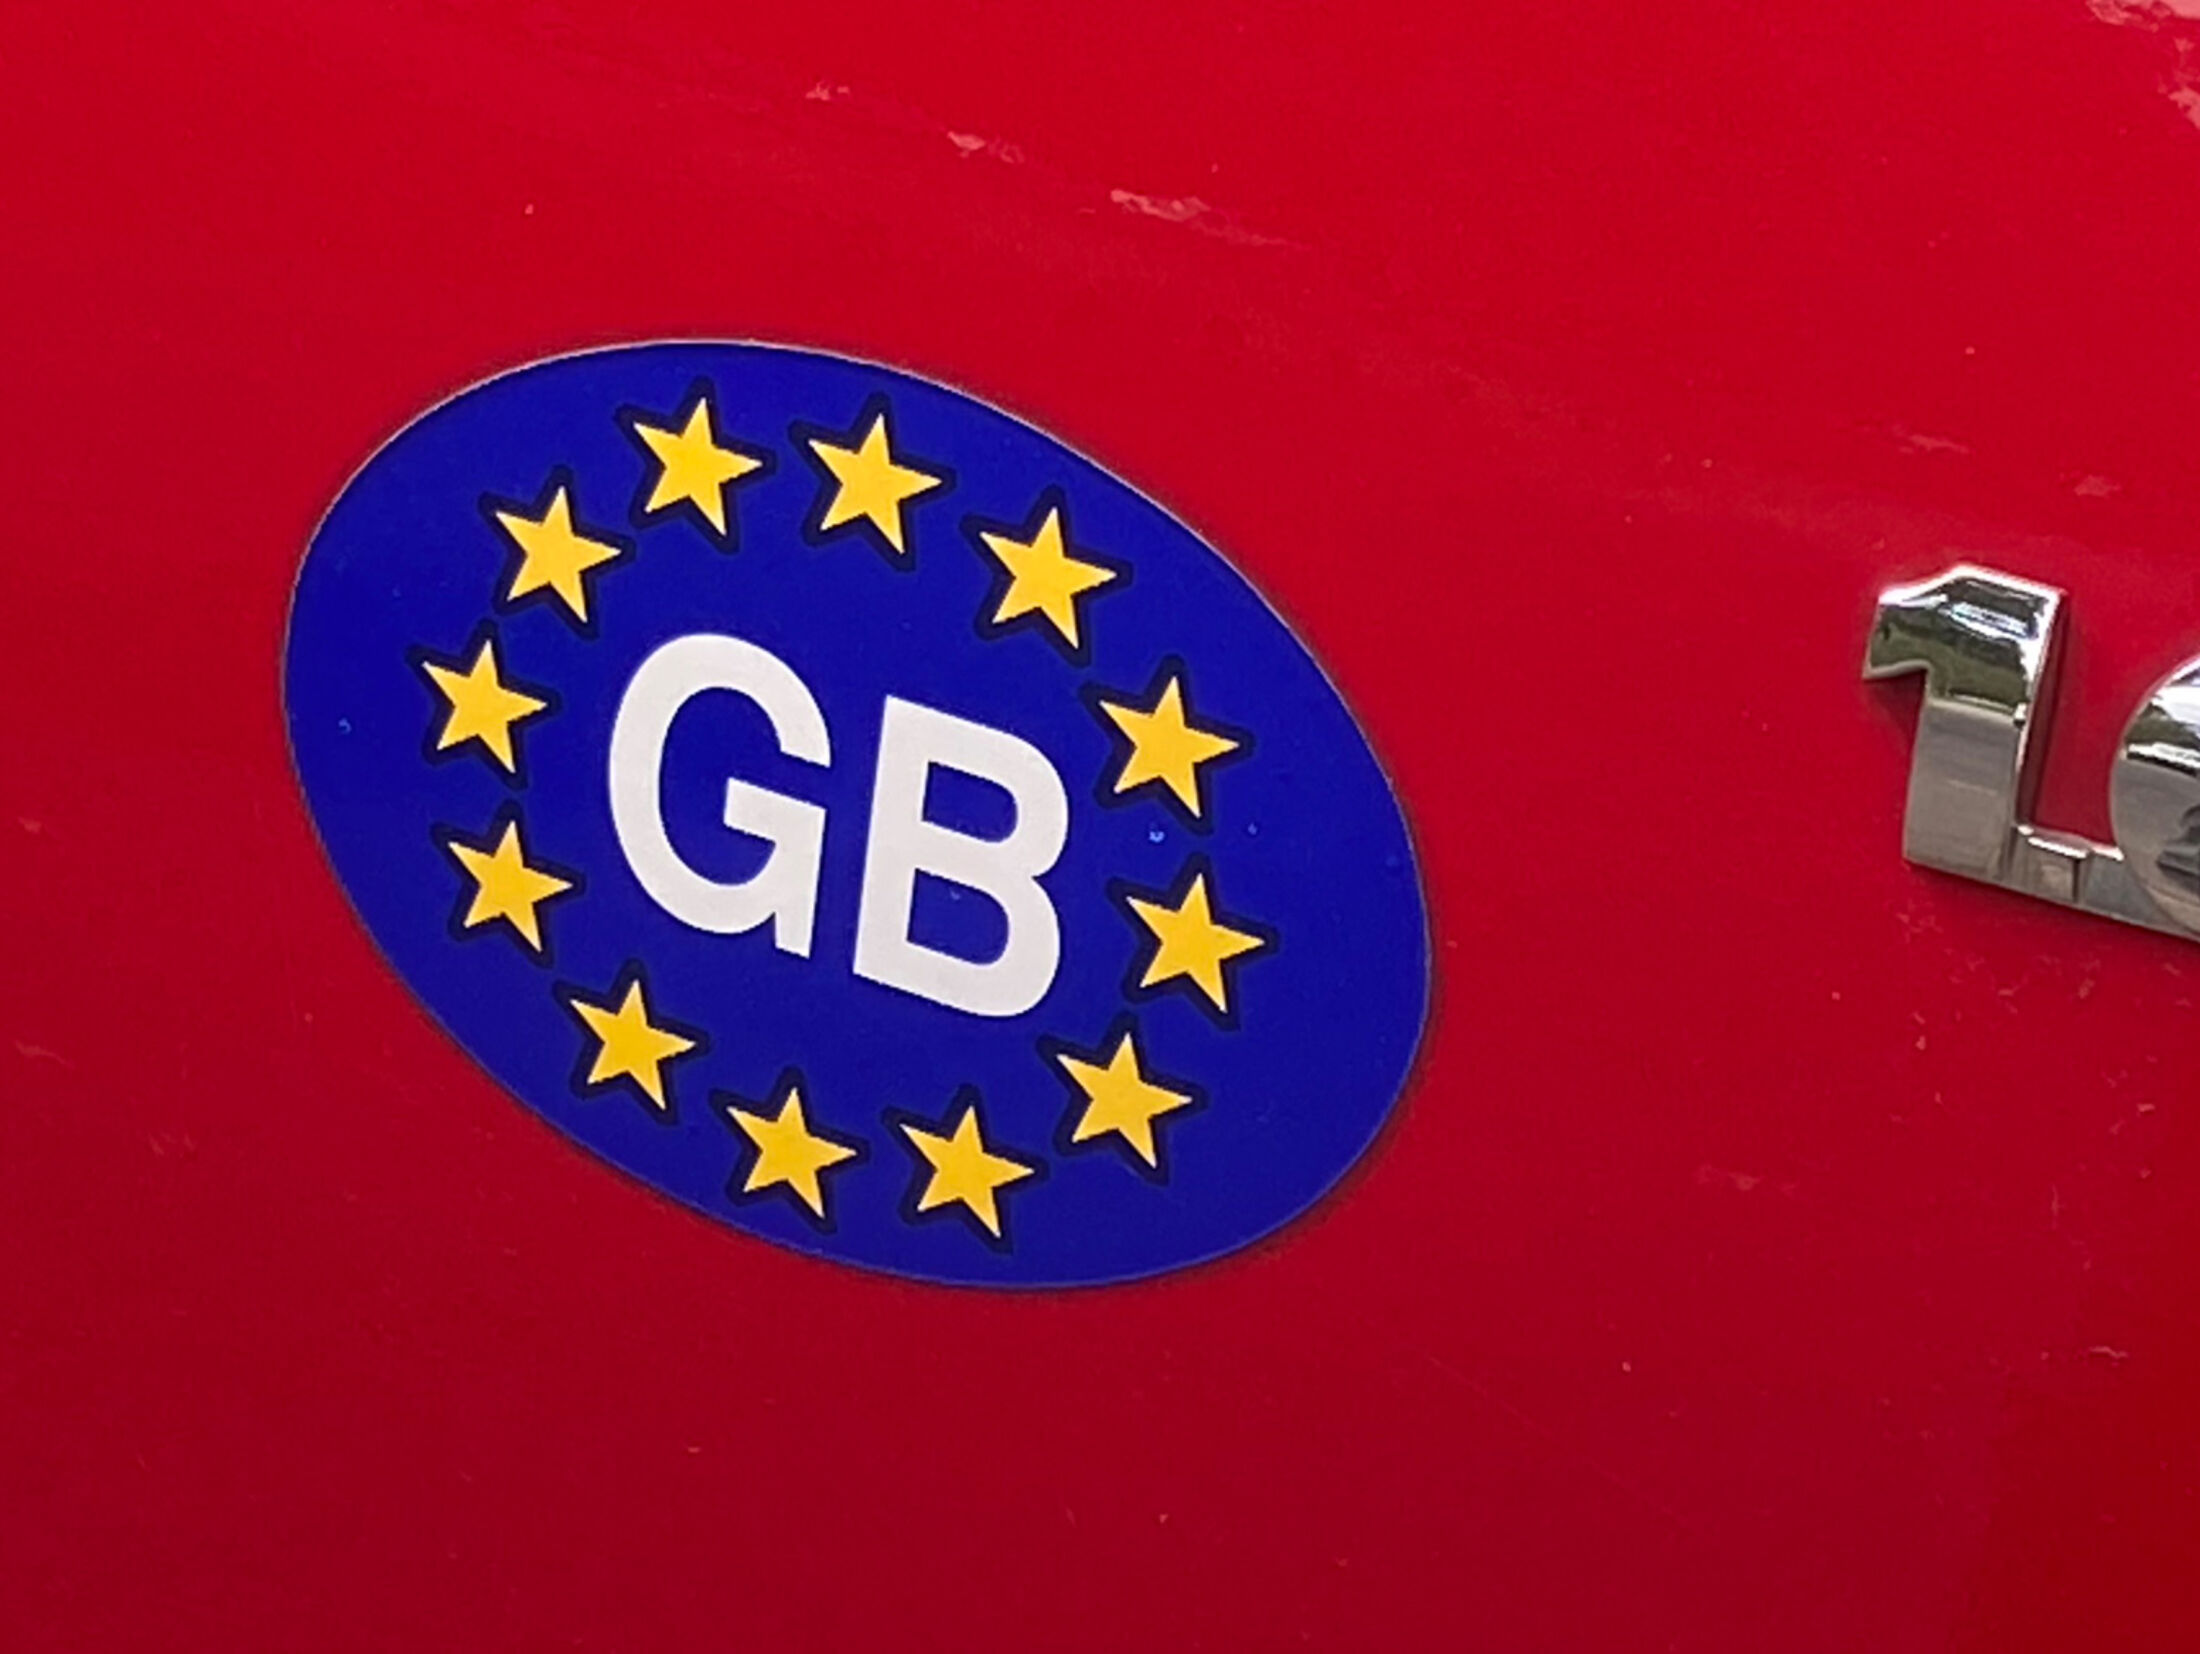 Großbritannien: Autos brauchen UK statt GB